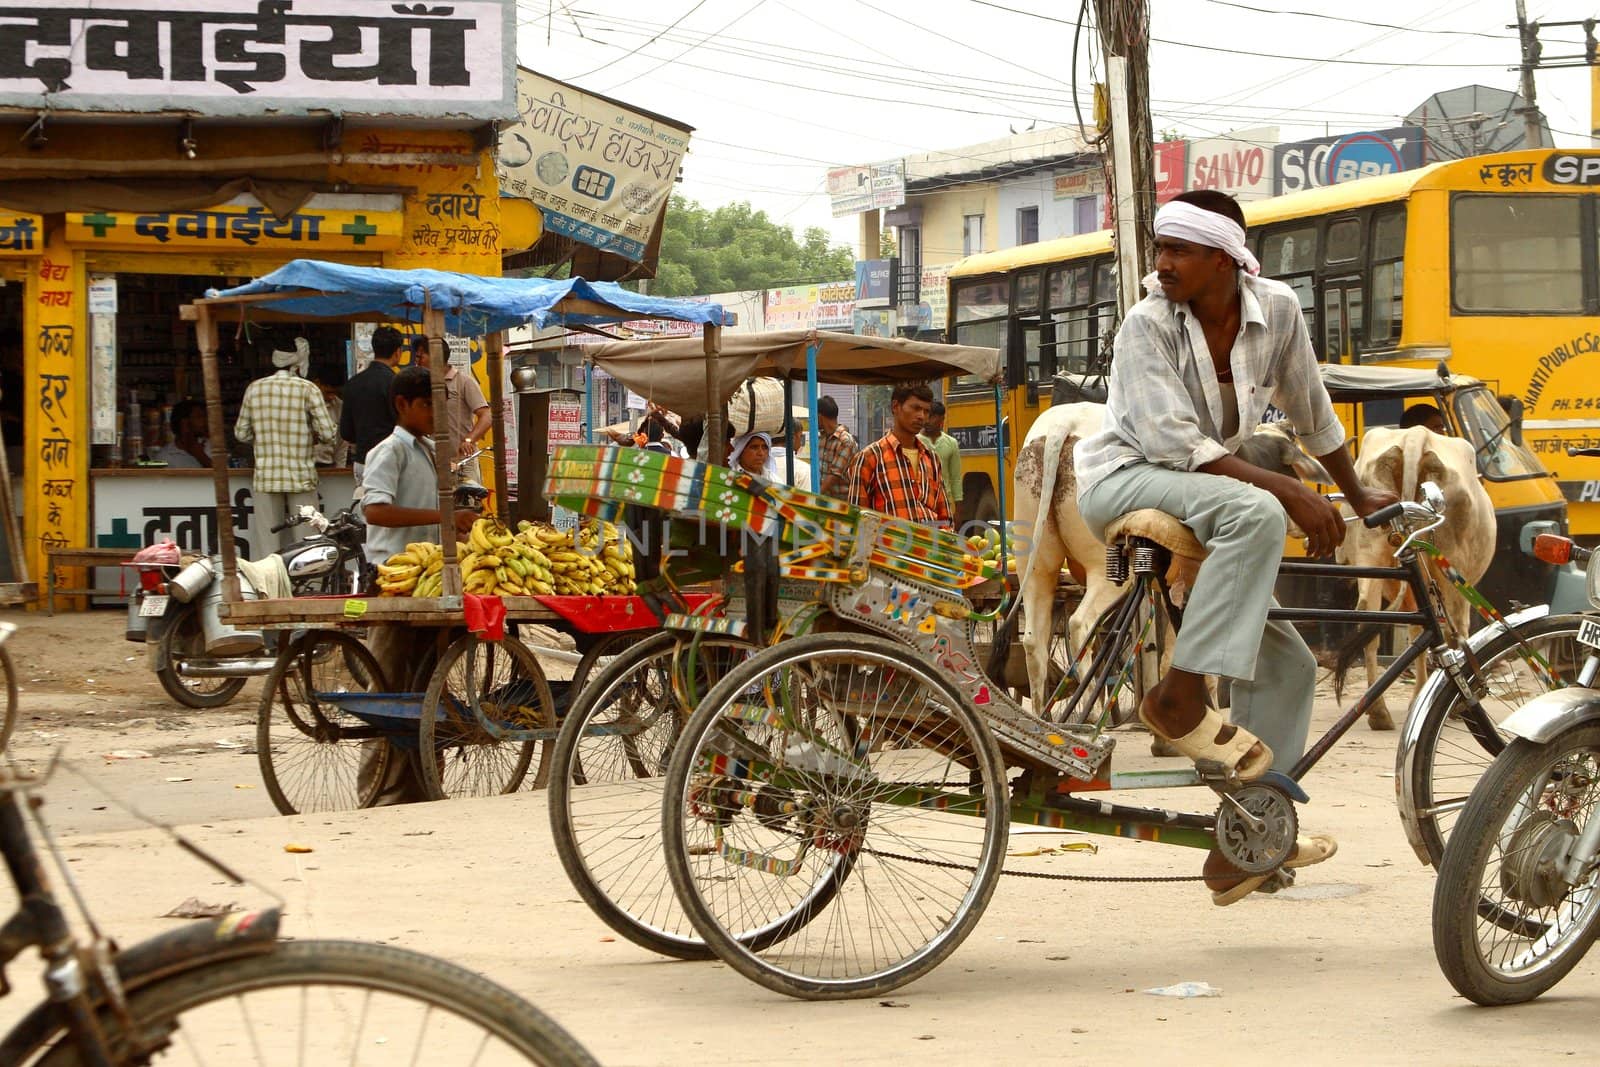 A Street Scene in Old Delhi India